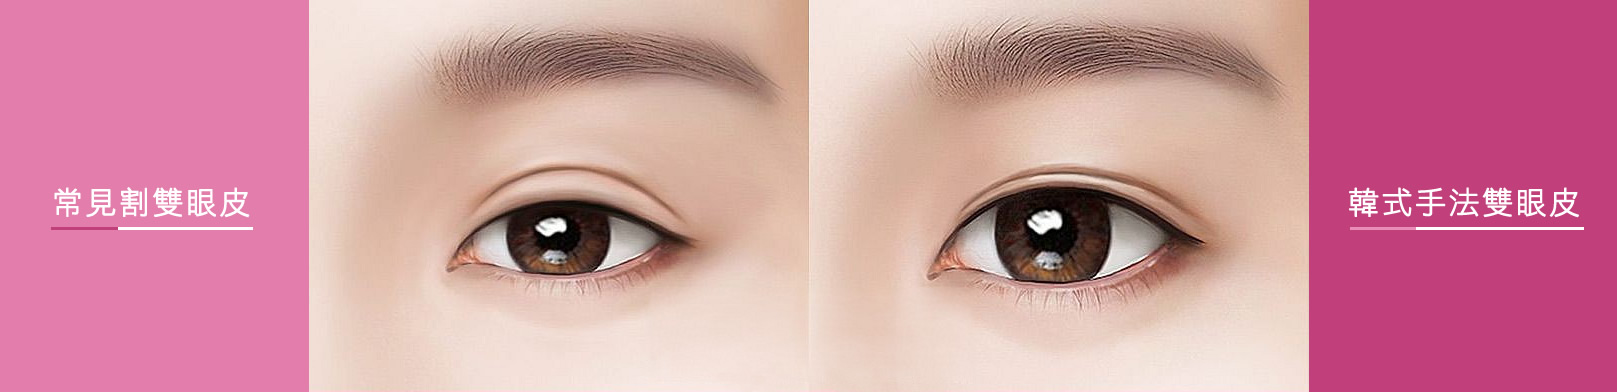 韓后-常見割雙眼皮、韓式手法雙眼皮。